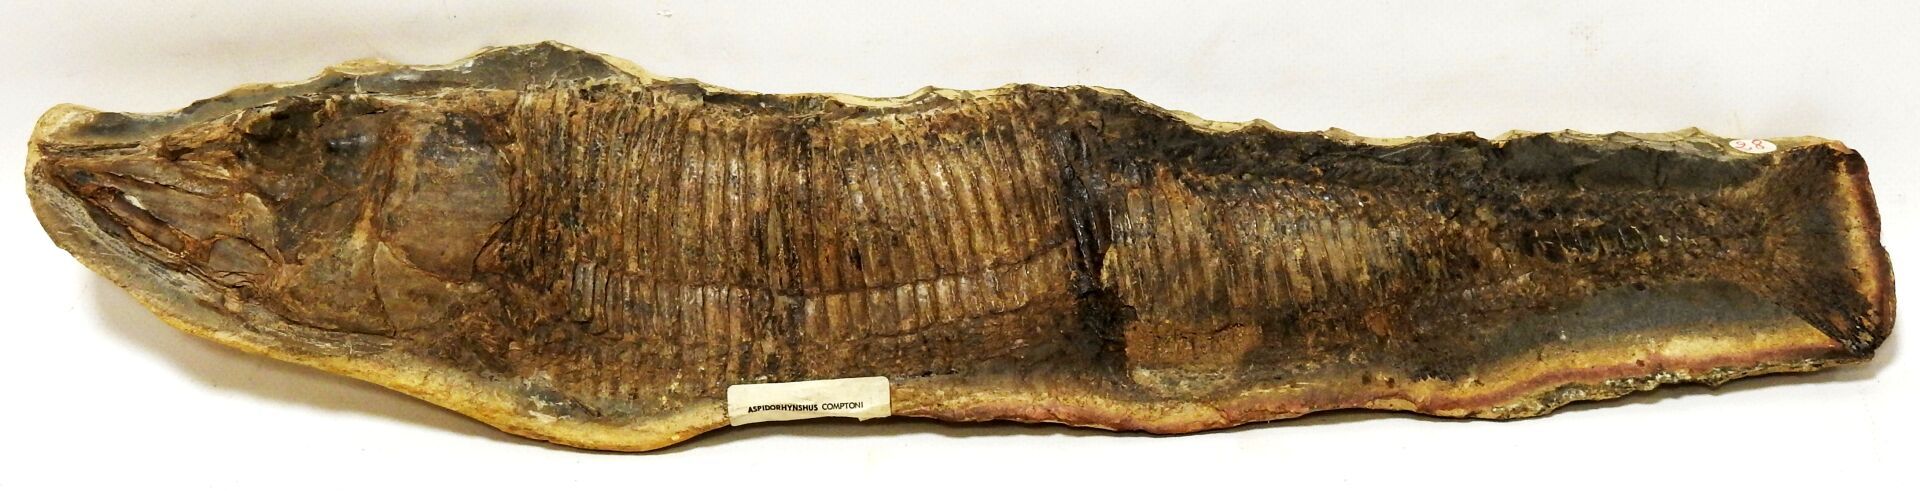 Null 代表Aspidorhynchus Compoti的化石。

它的名字的意思是 "装甲的鼻子"，这种现已灭绝的物种在侏罗纪和白垩纪时期存在。在欧洲也发现&hellip;